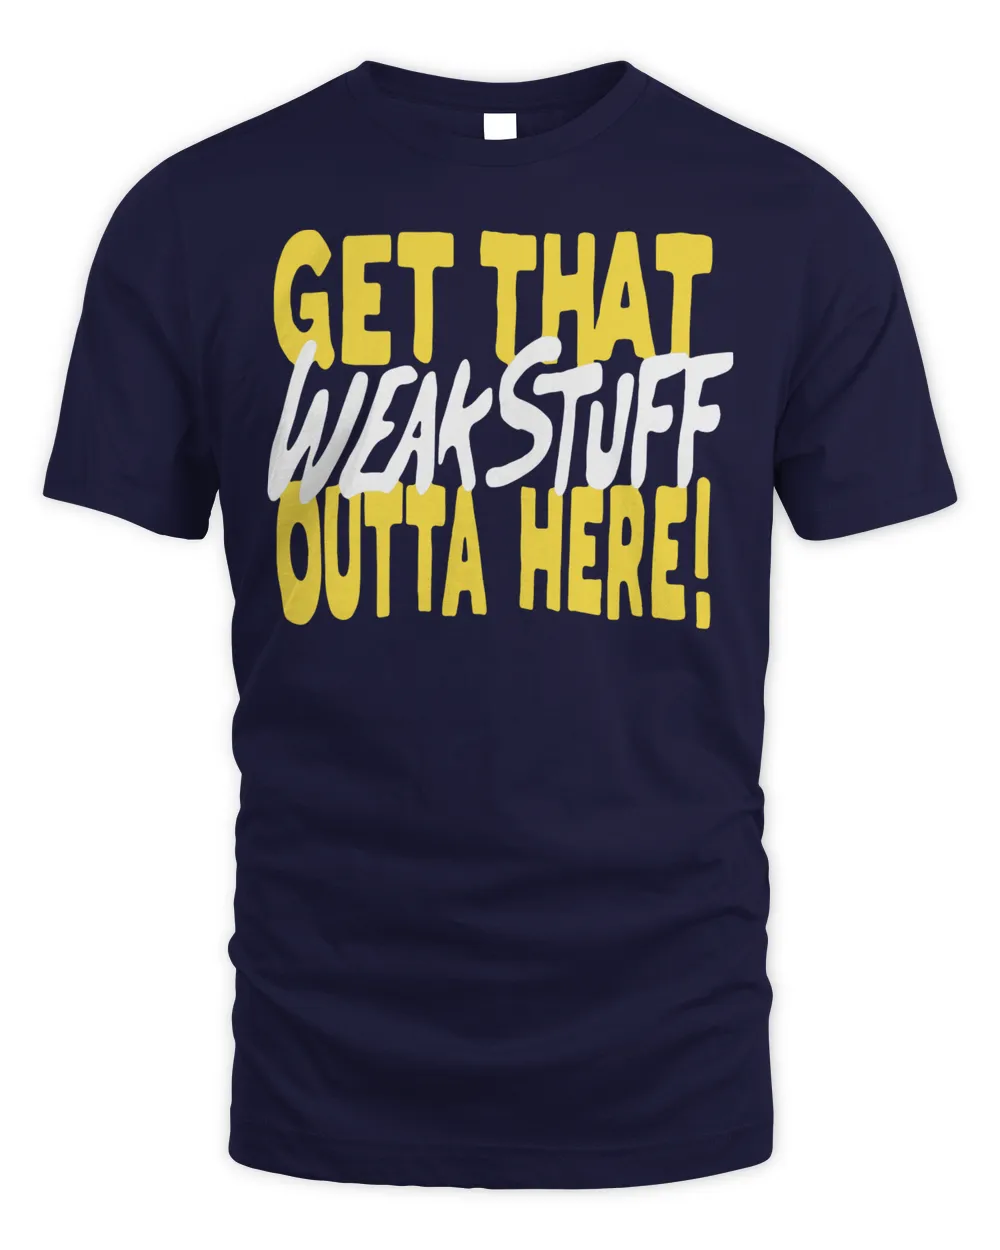 Official Get that weak stuff outta here T-shirt Unisex Standard T-Shirt navy 